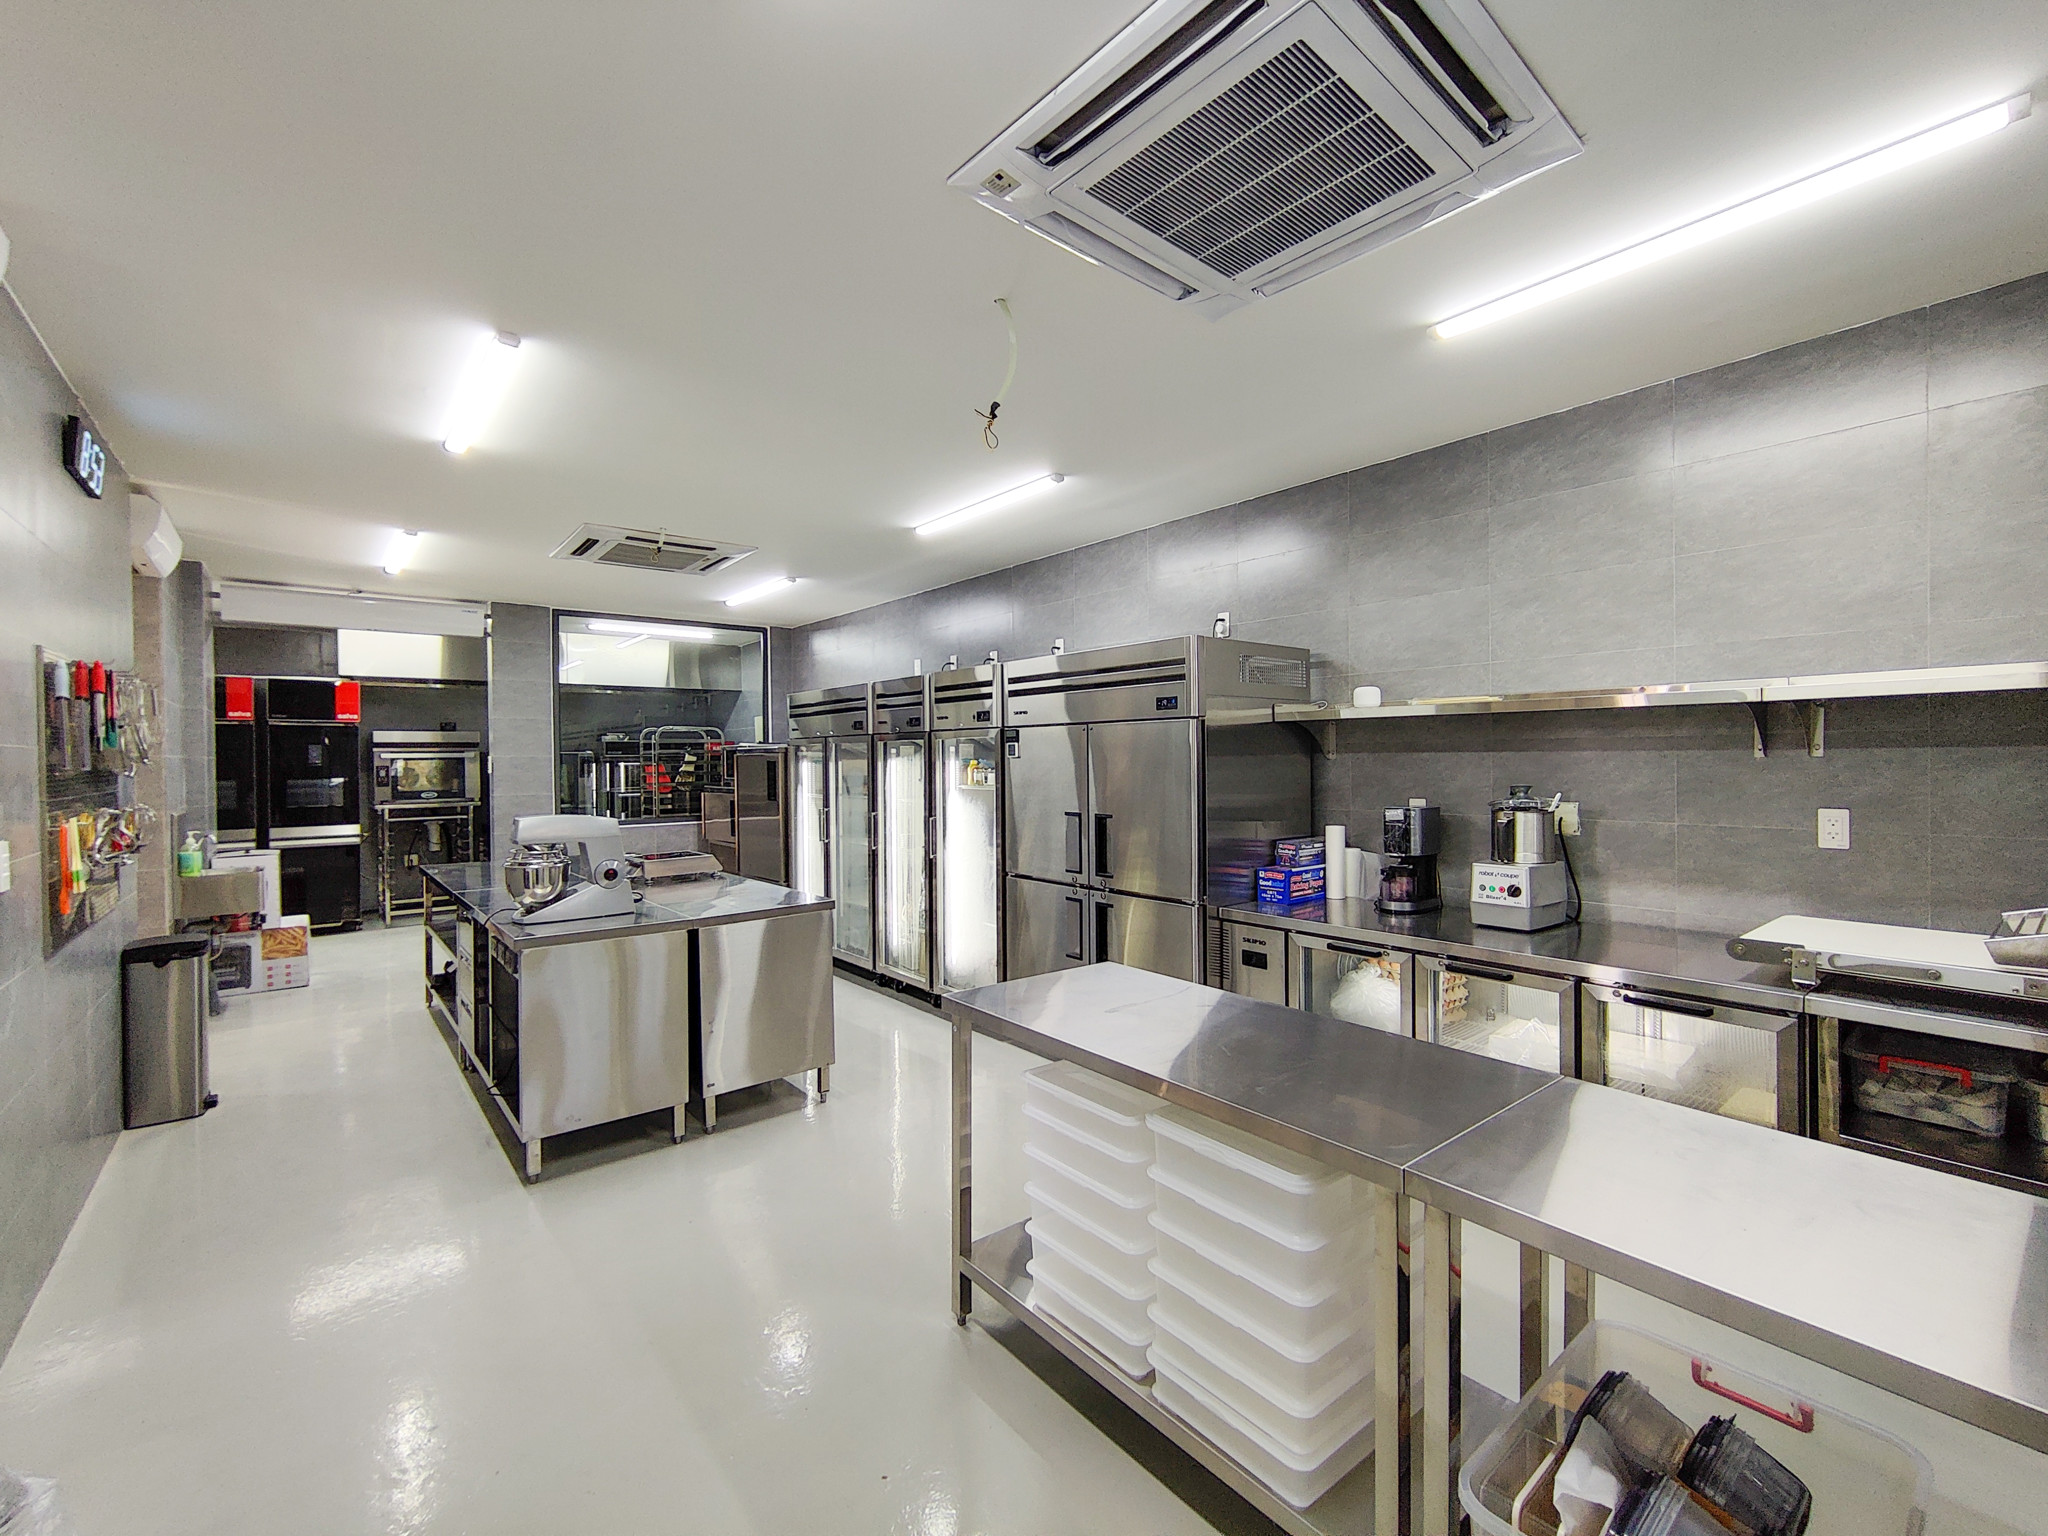 Thi công, lắp đặt bếp công nghiệp: Quy trình, kinh nghiệm và lưu ý